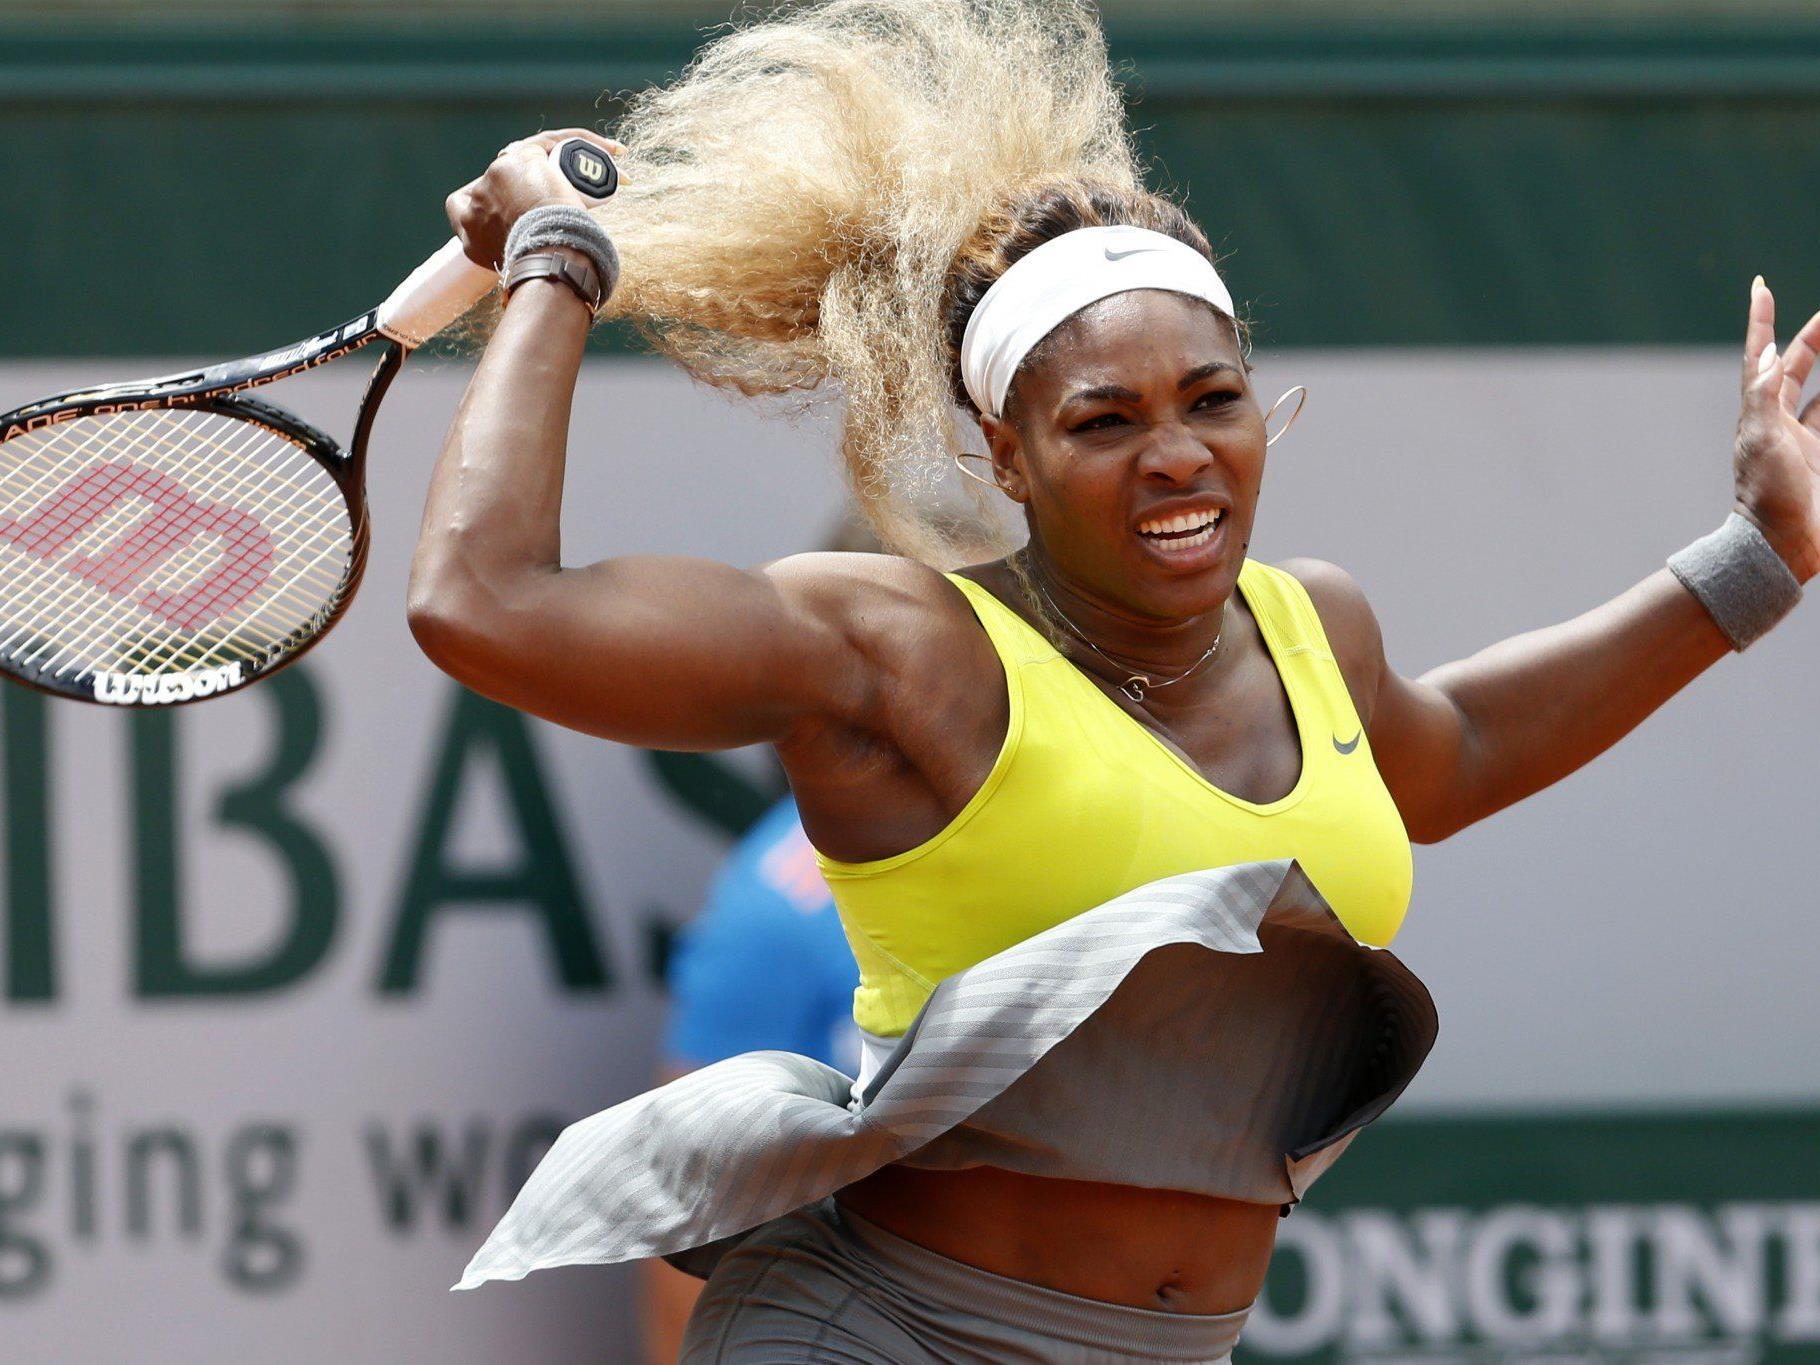 Glatte Zwei-Satz-Niederlage für Serena Williams.